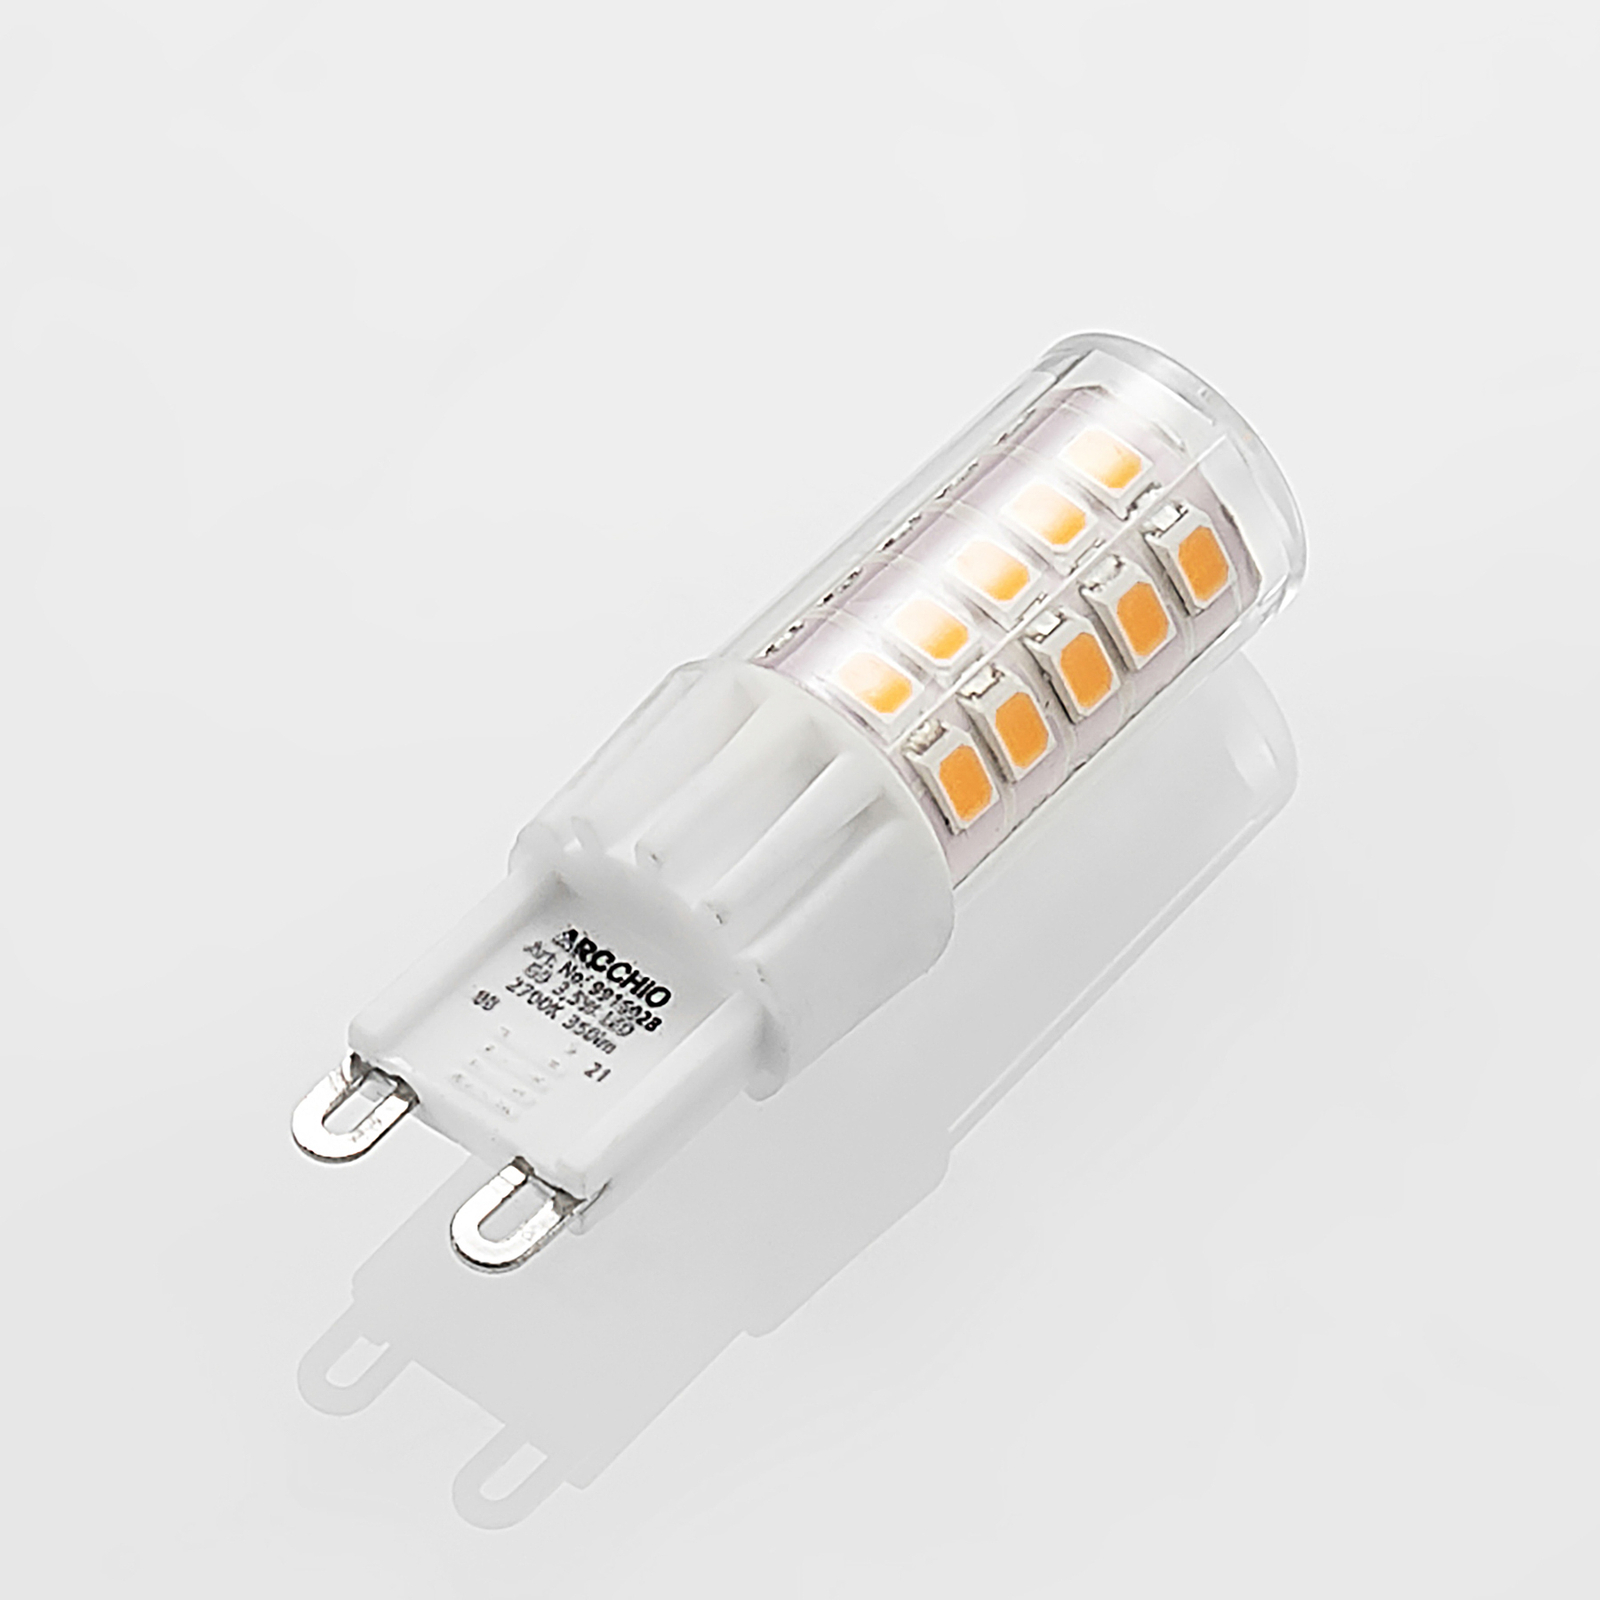 Arcchio LED s kolíkovou päticou G9 3,5W 827 10 ks